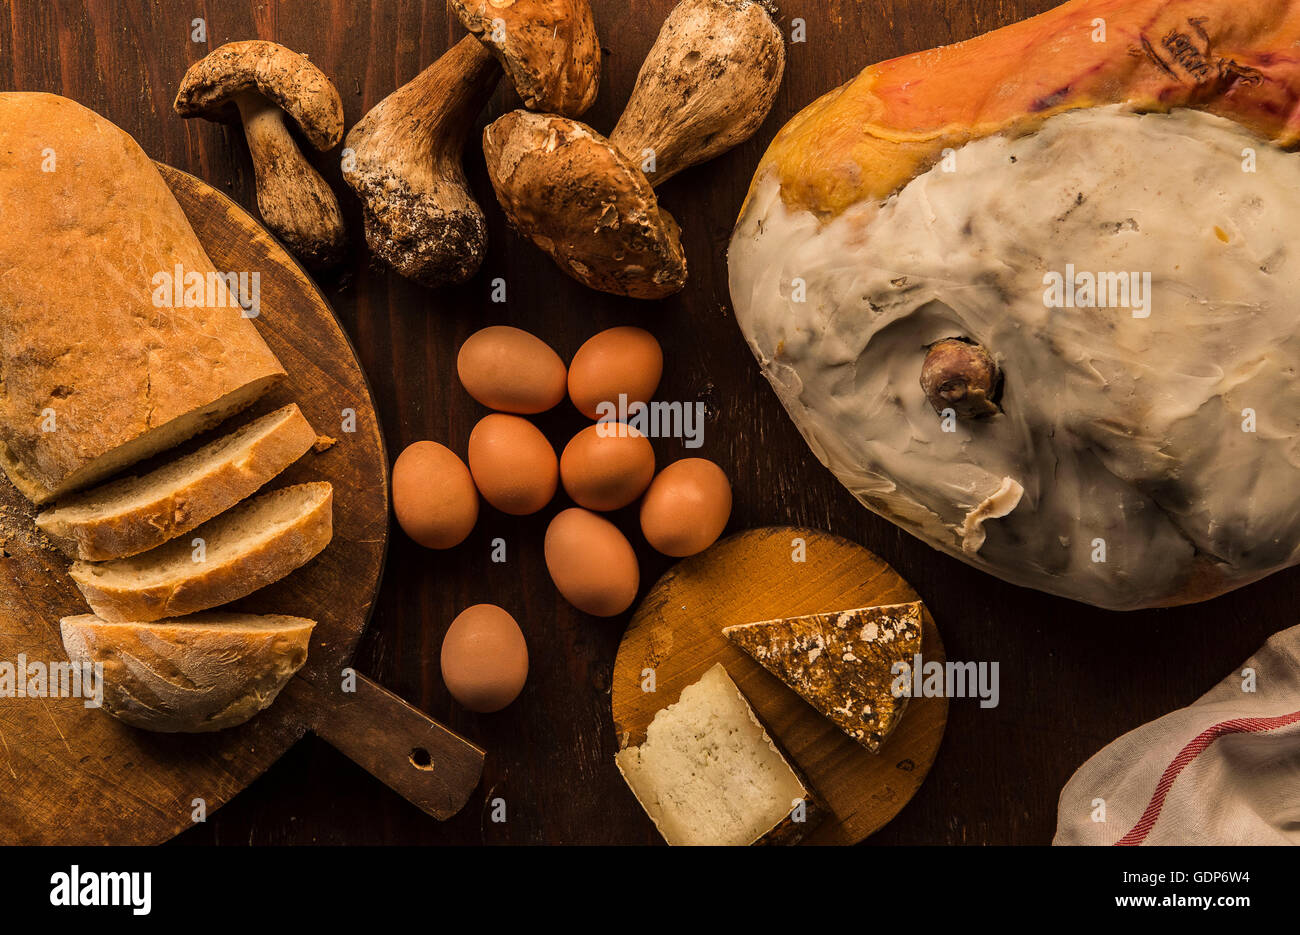 Vista aerea di materie e preparati alimentari, formaggio, pane, uova e funghi porcini Foto Stock